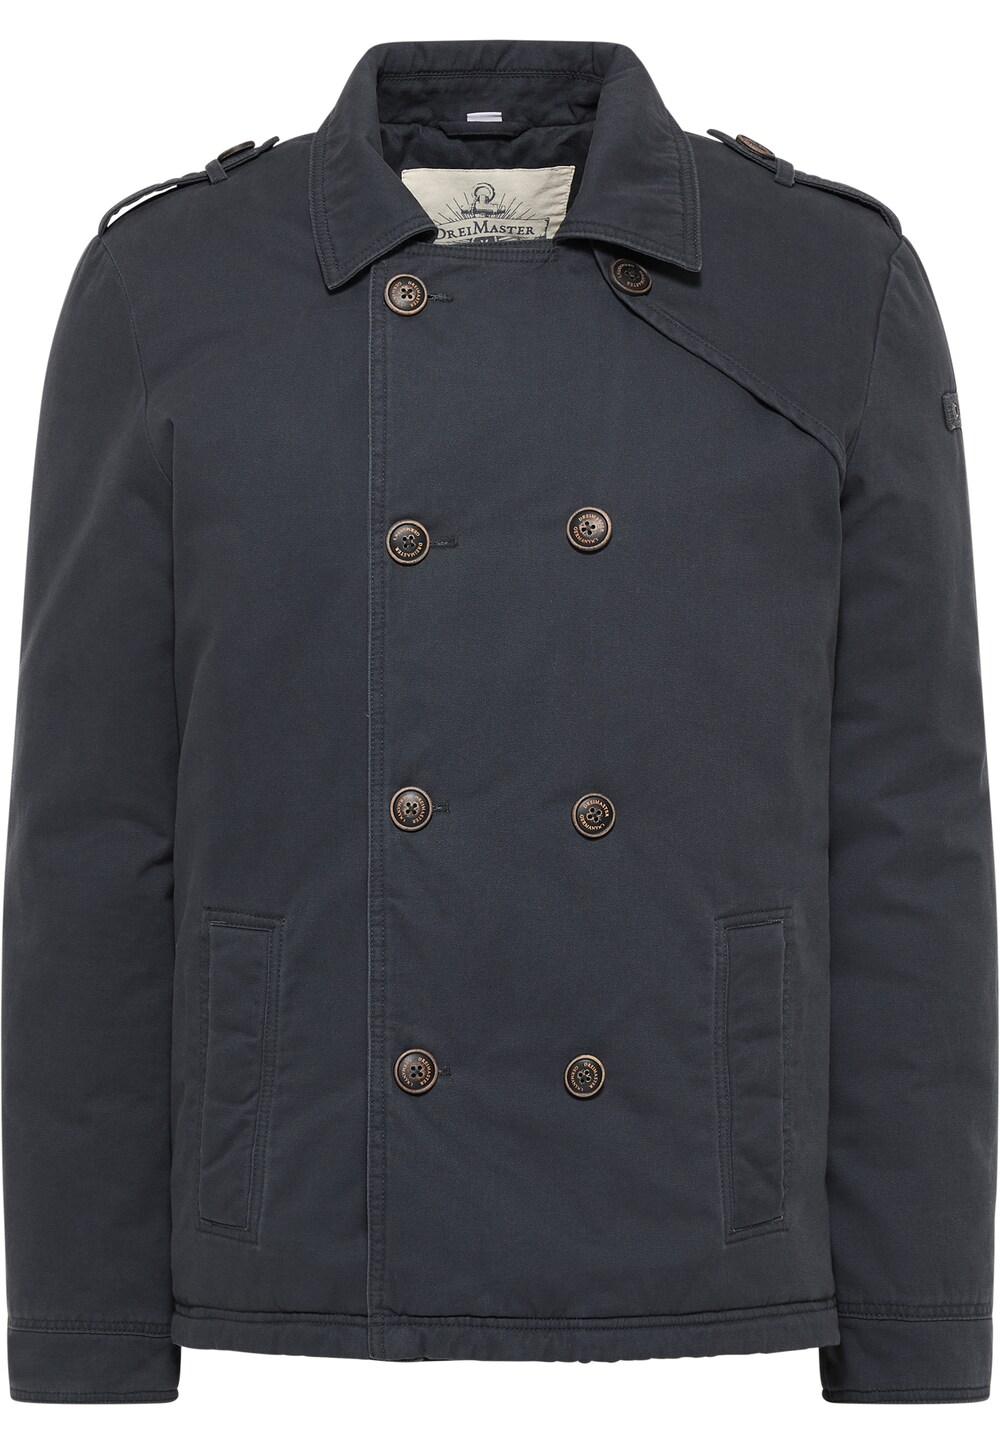 Межсезонная куртка DreiMaster Vintage, ночной синий межсезонная куртка dreimaster vintage ржаво красный